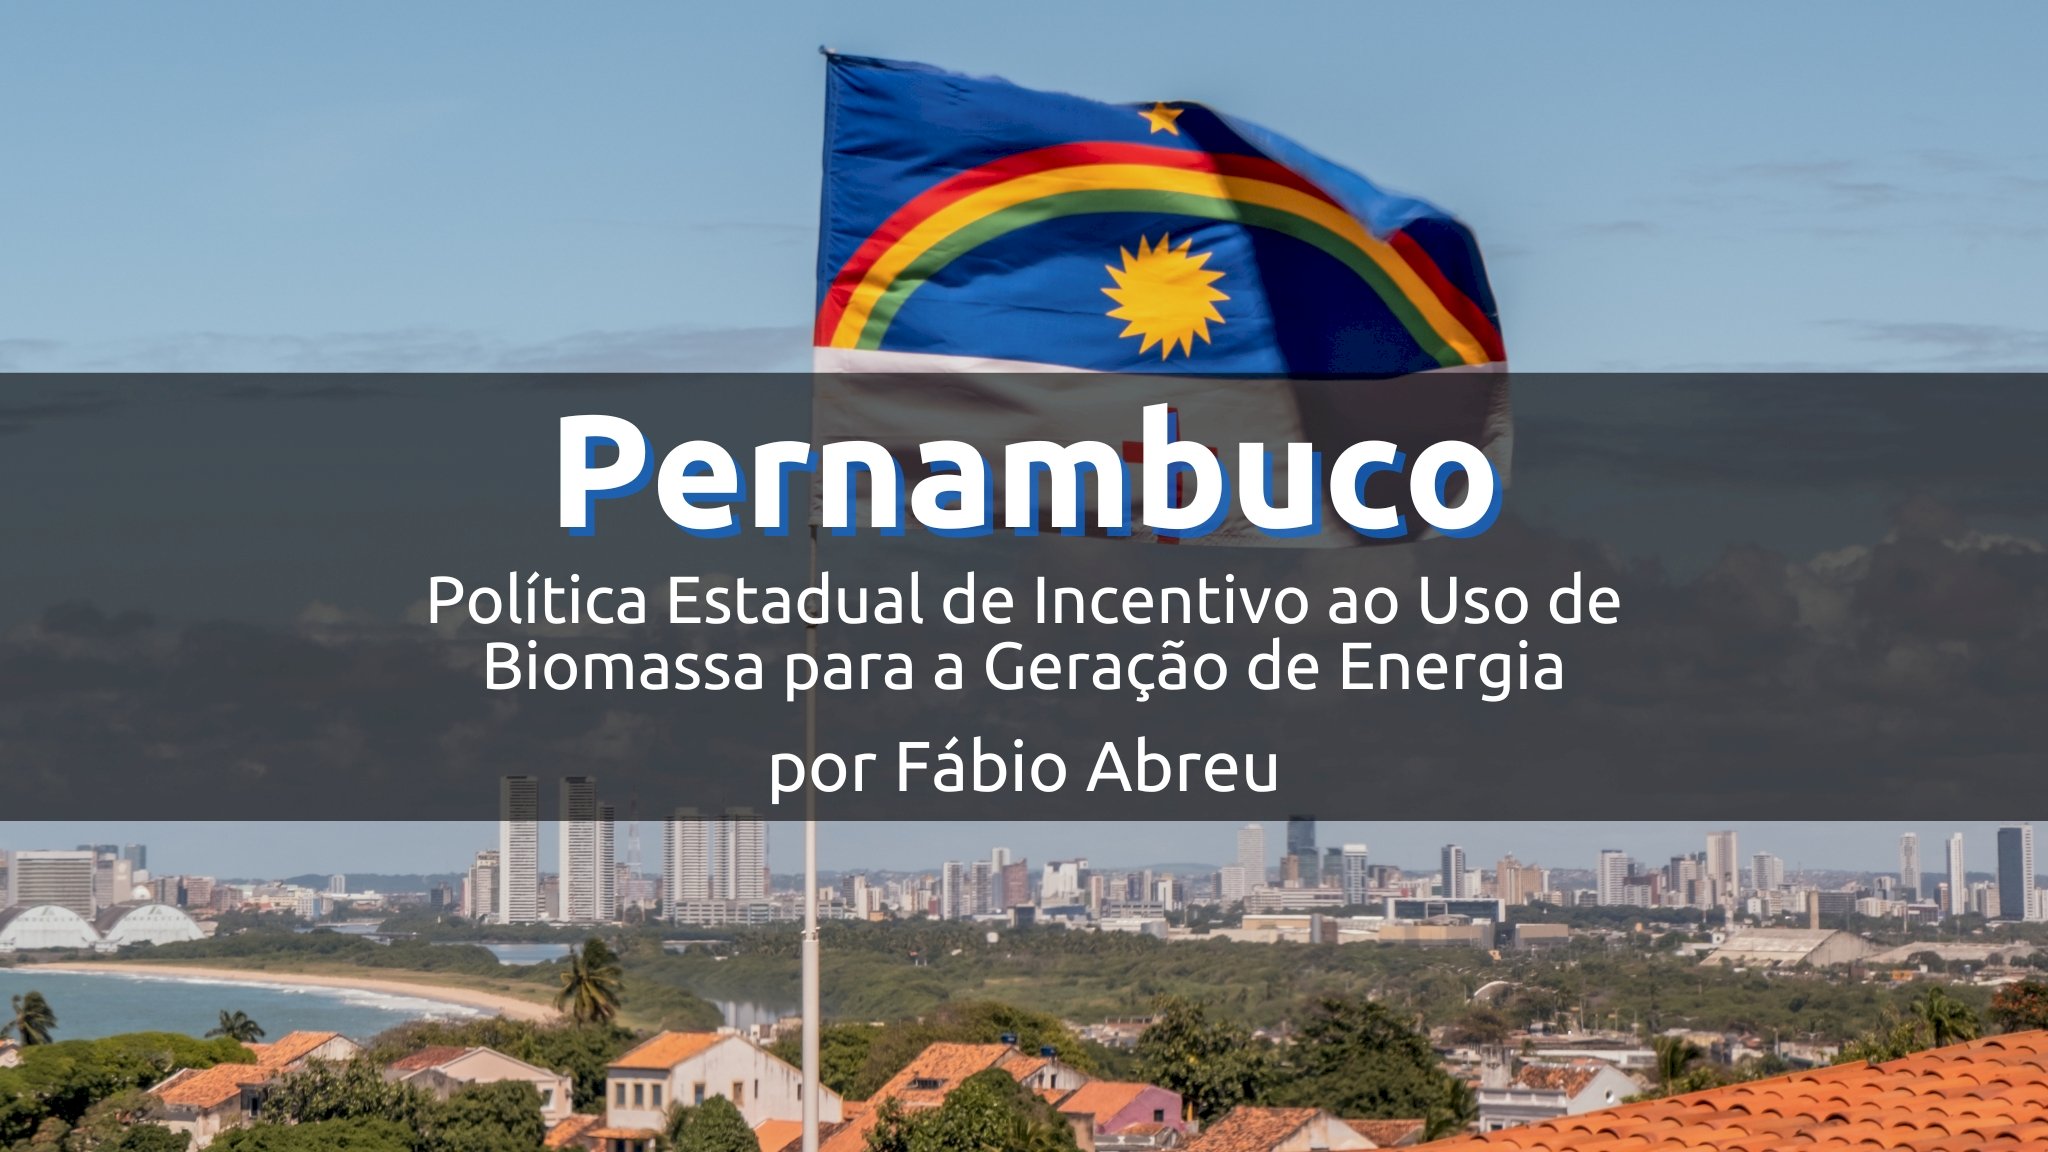 Pernambuco e a Política Estadual de Incentivo ao Uso de Biomassa